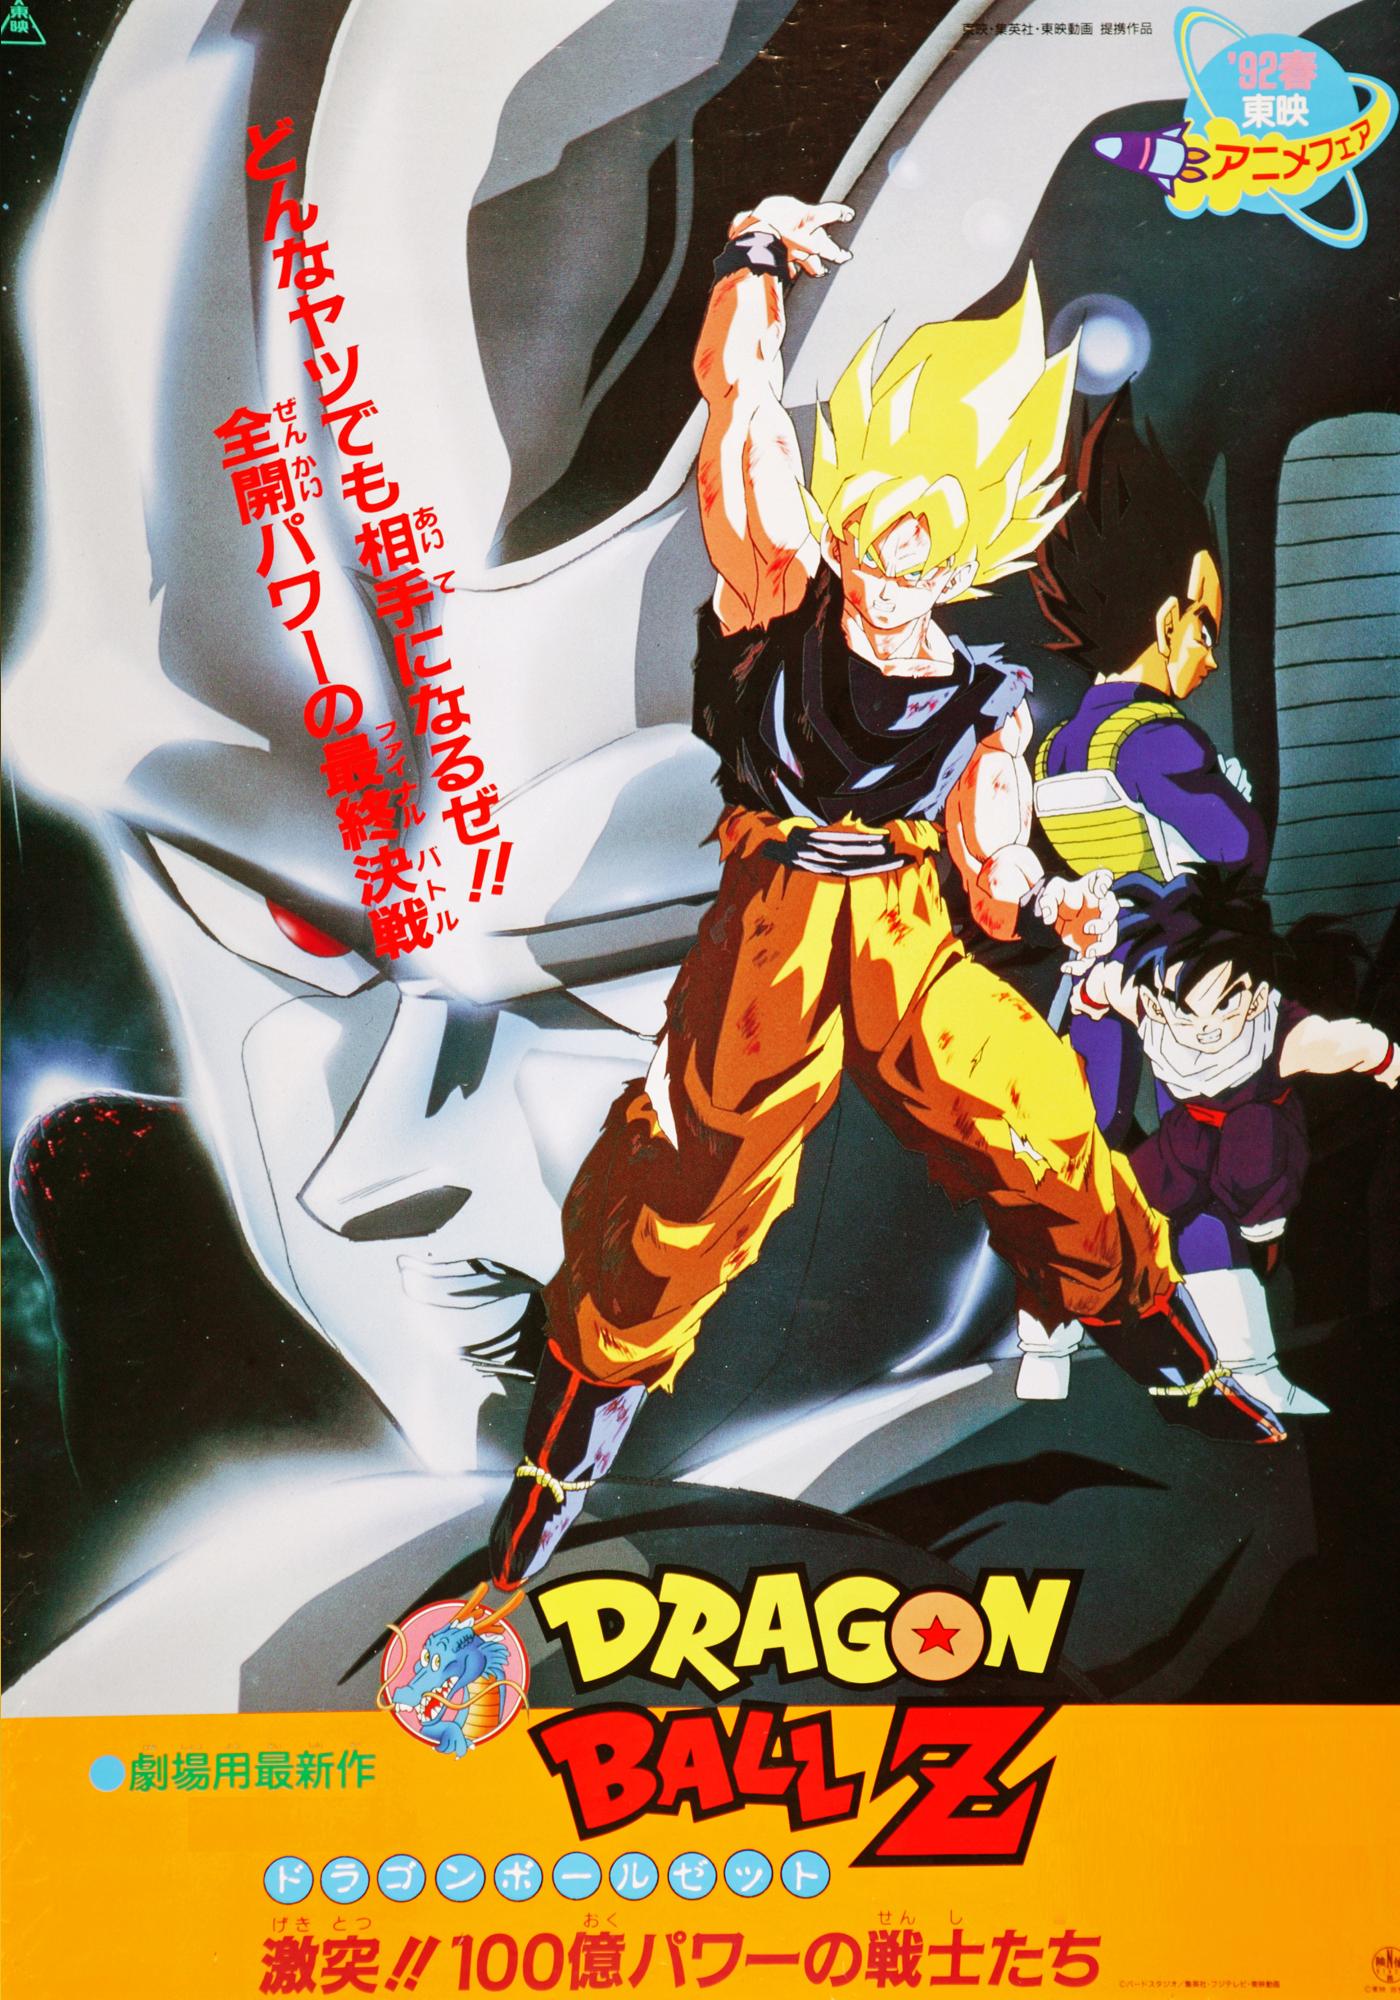 Dragon Ball Z e Super - Lista completa de filmes - Critical Hits